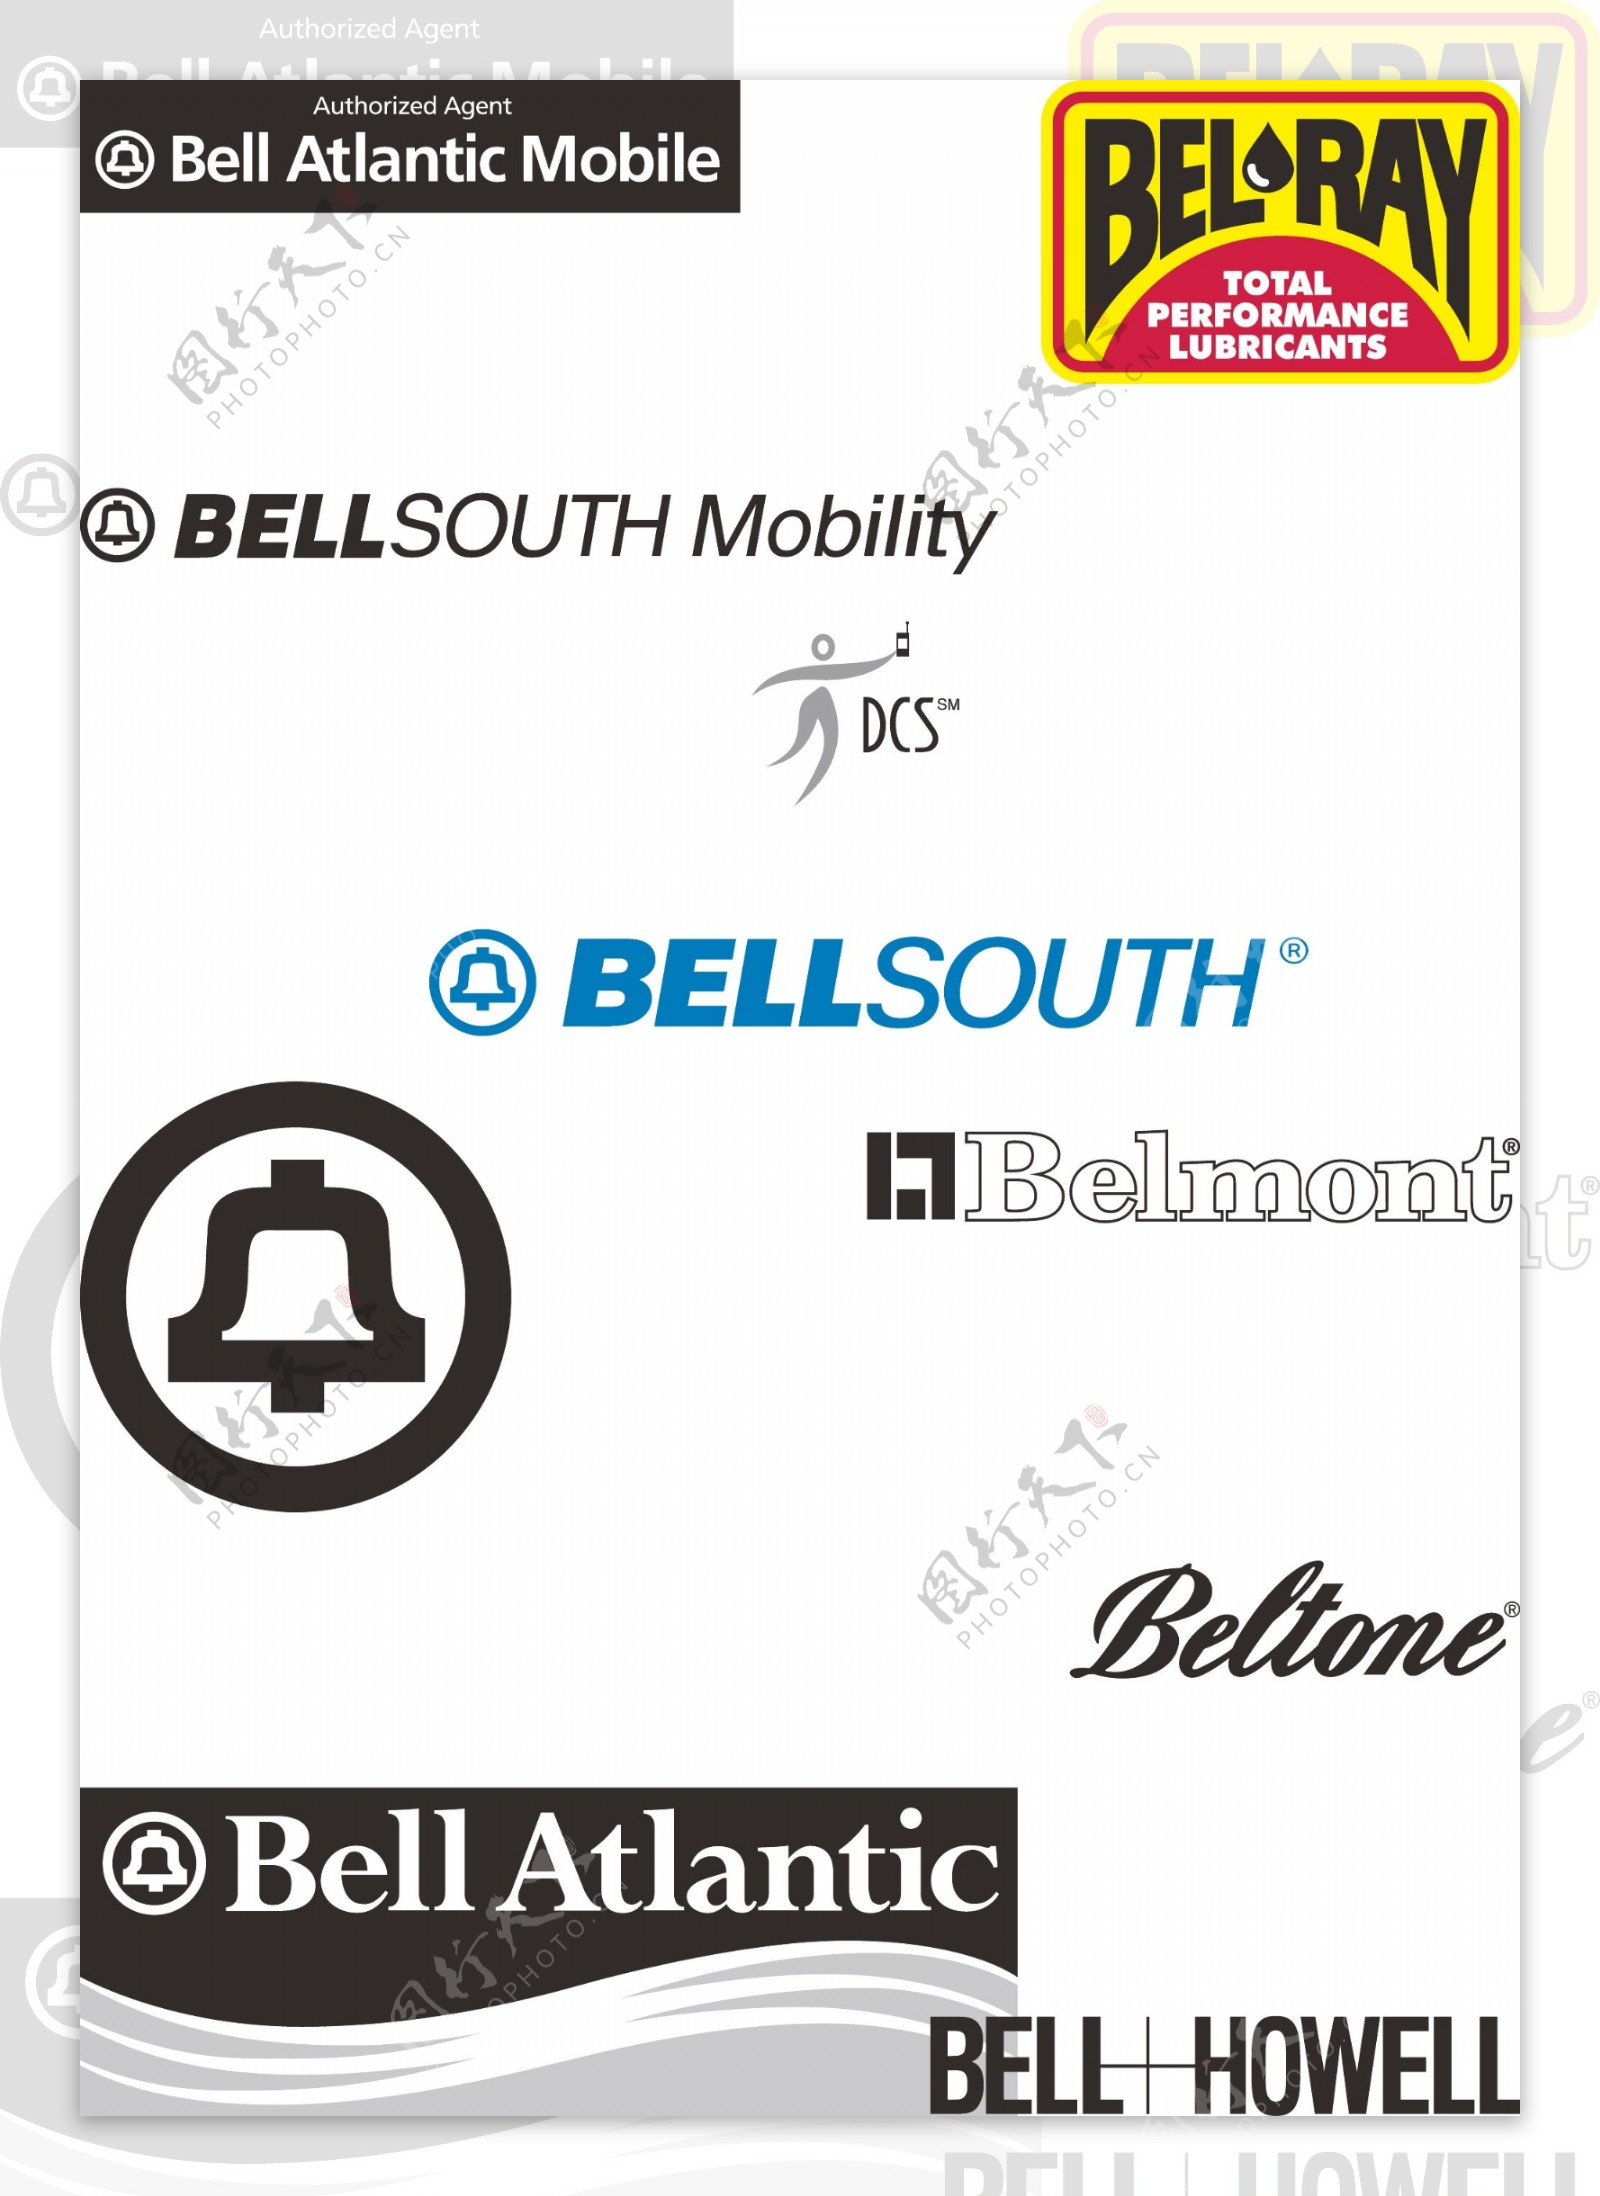 bell钟声公司logo标志图片